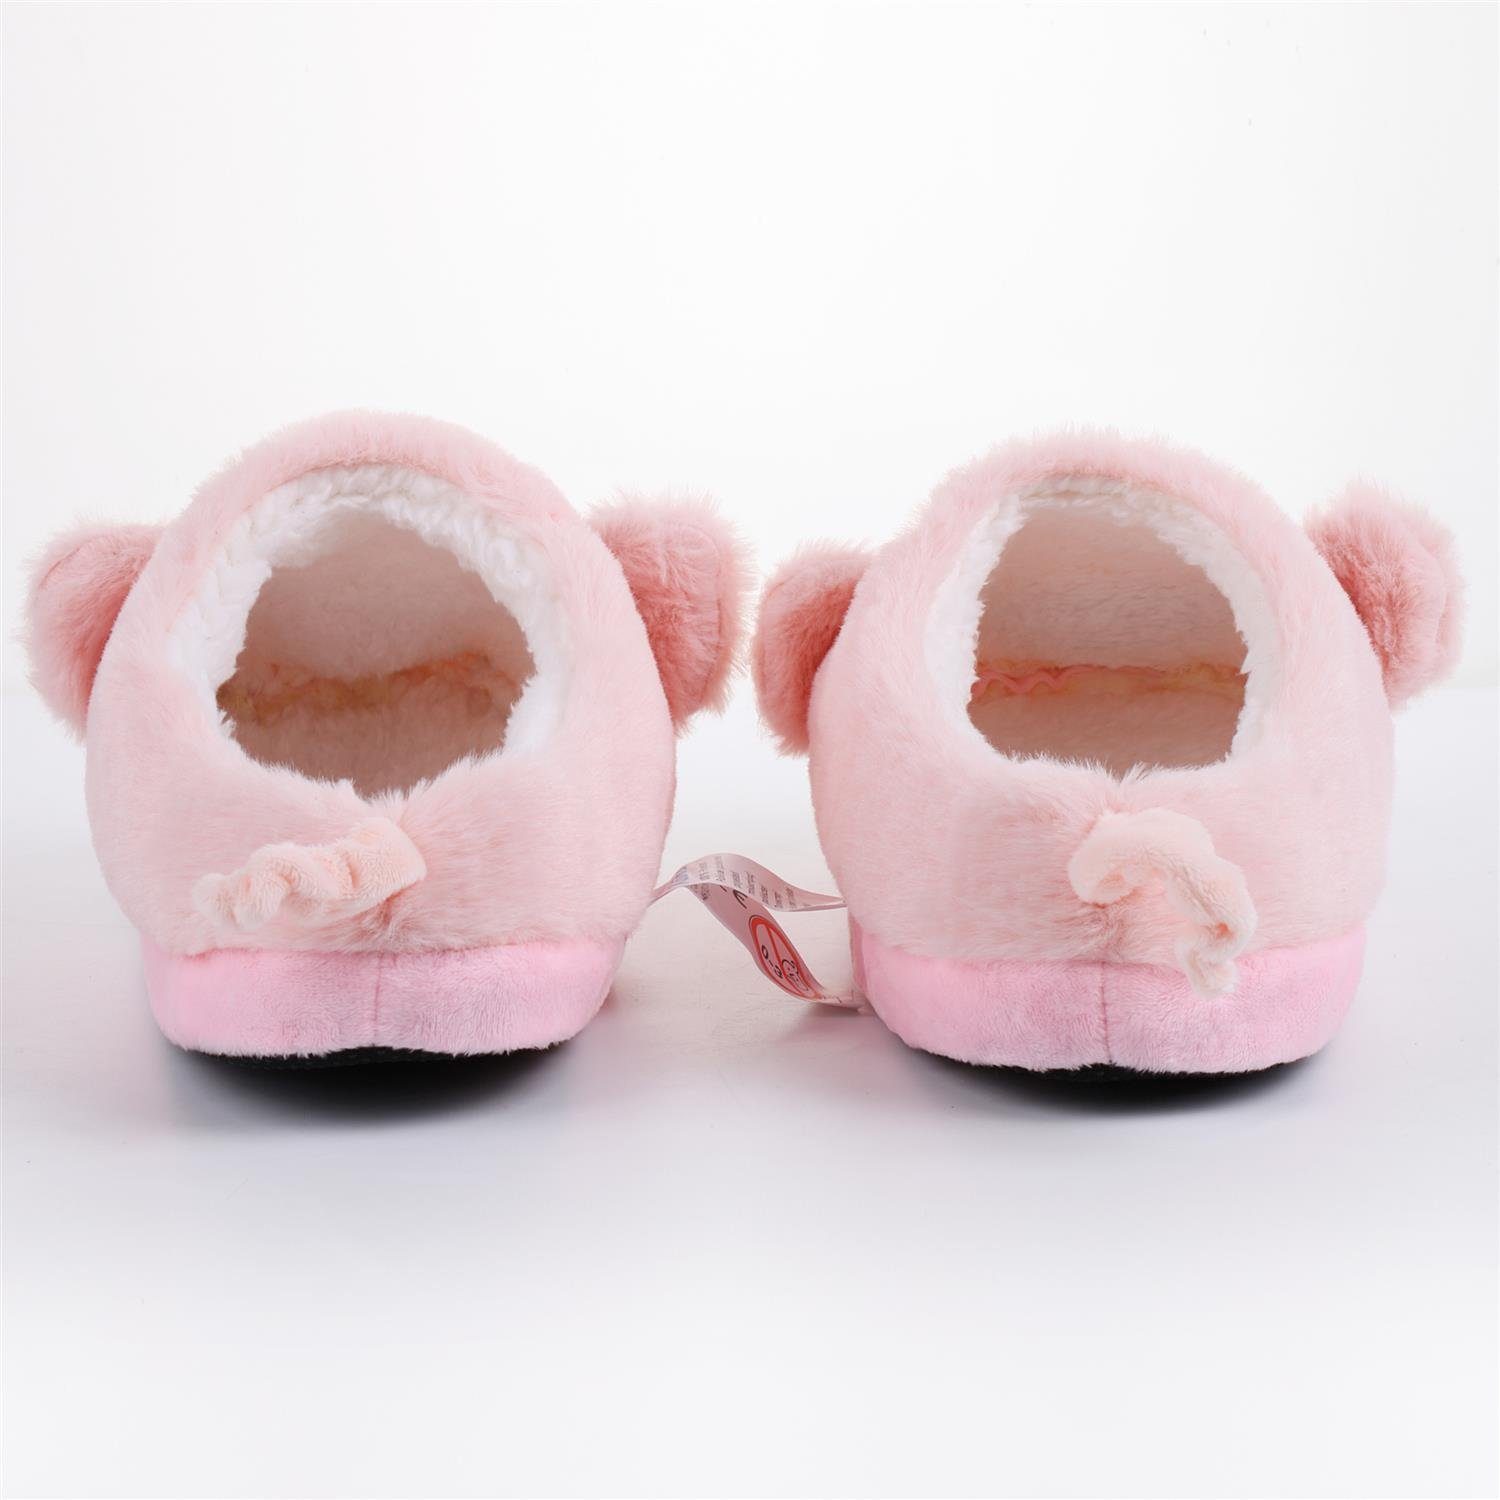 Pantoffeln (hinten Plüsch Kuschelige Schweinchen Katara (Schwein, Hausschuhe geschlossen) rosa Lama, Bär) Tier